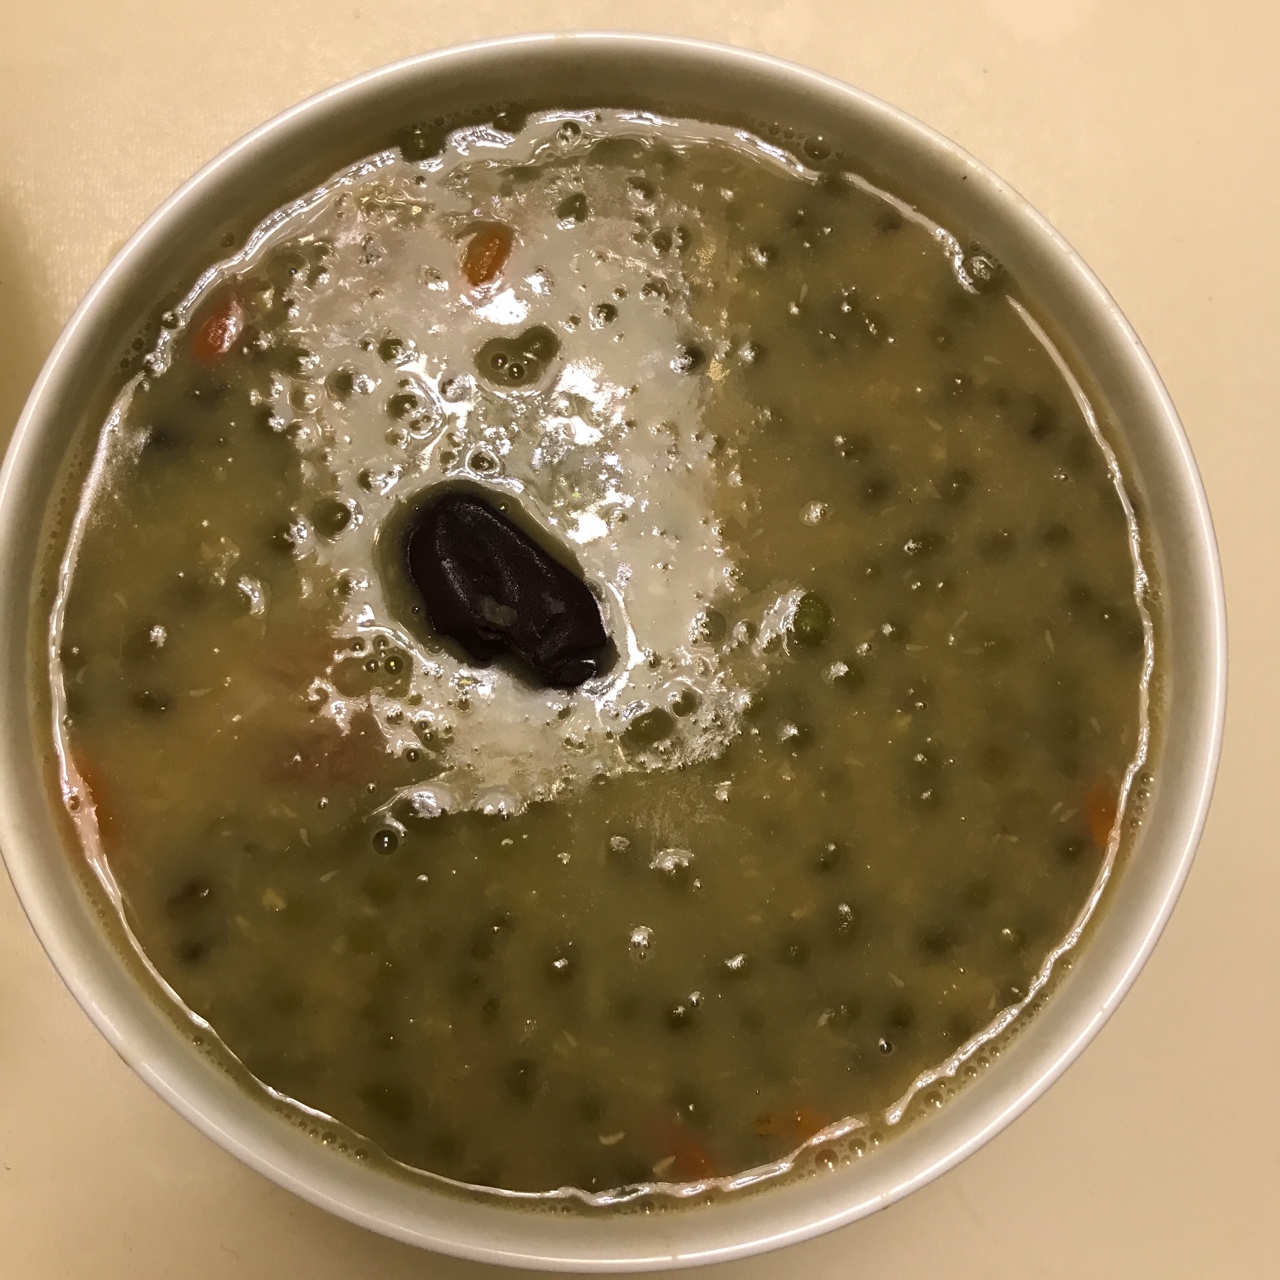 绿豆排骨汤